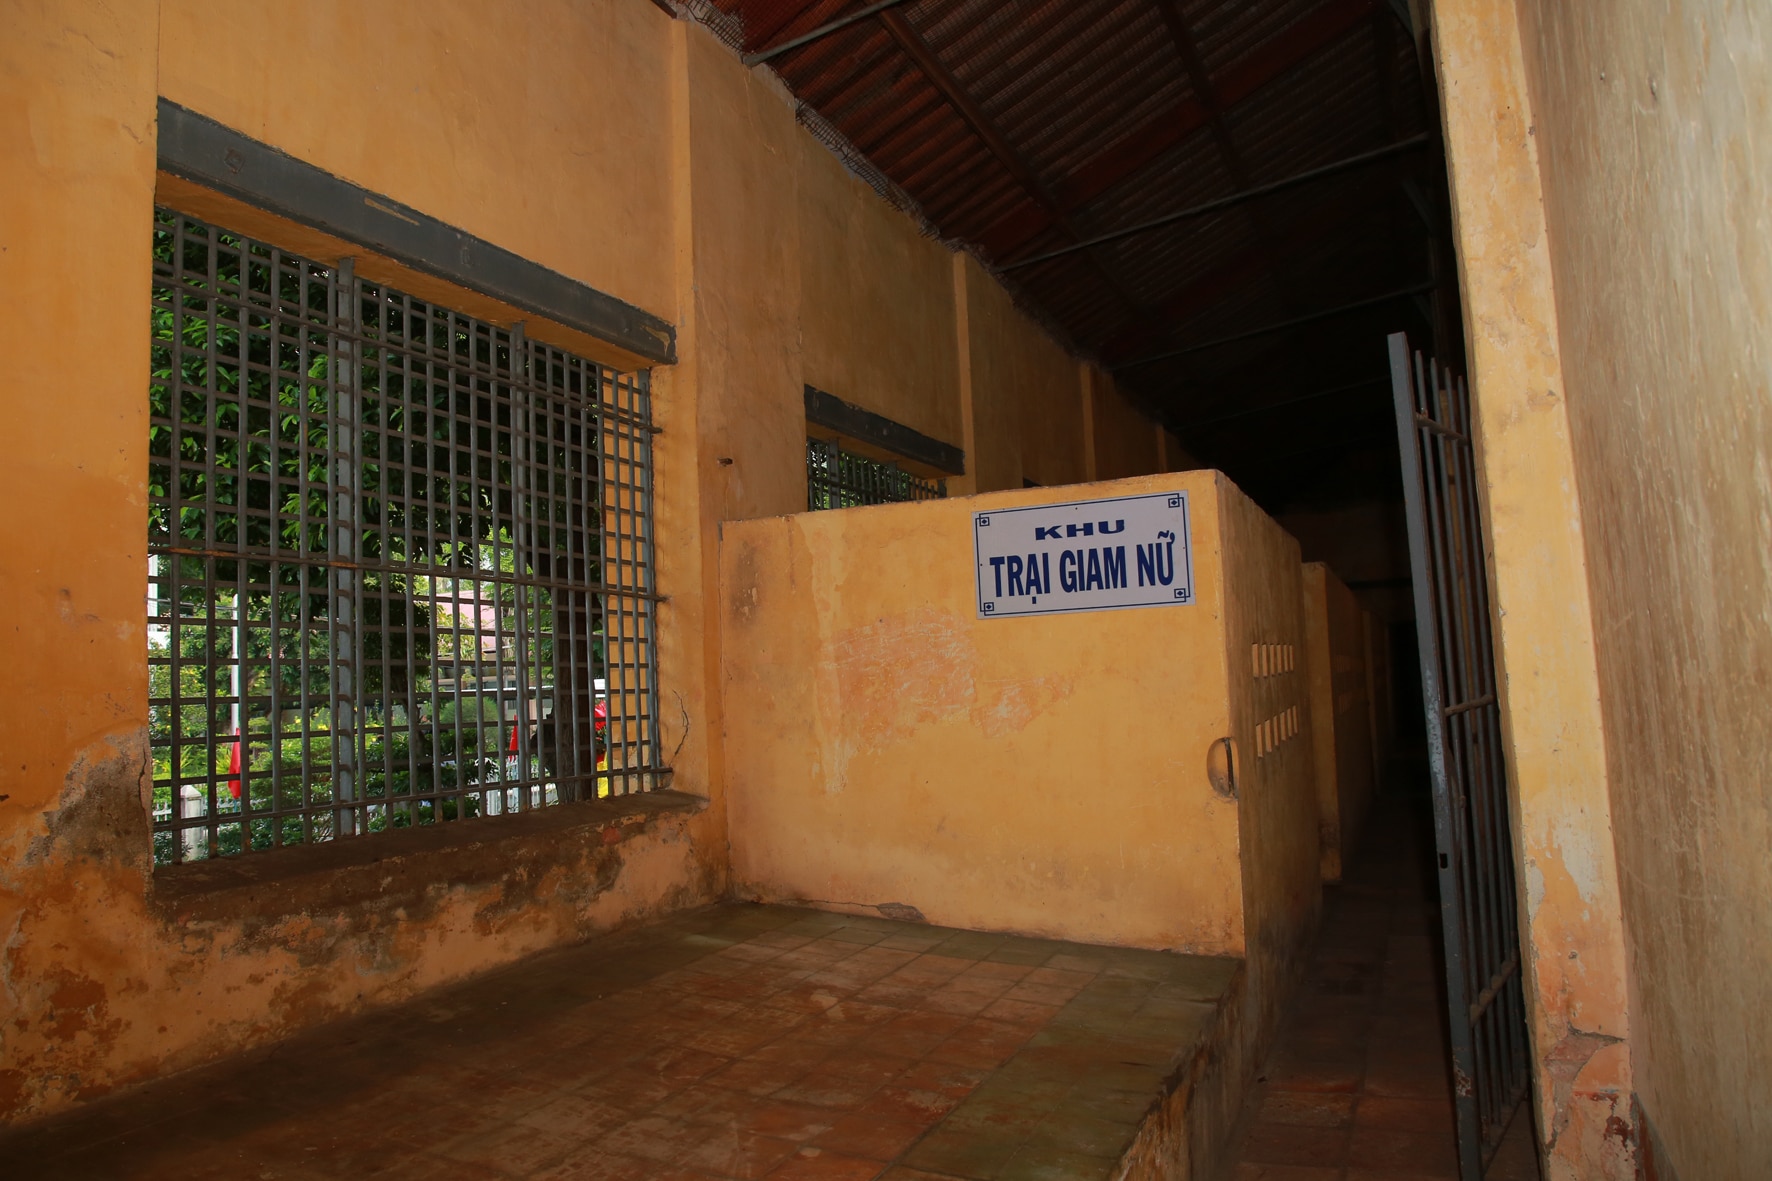 Khu trại giam Bệnh viện Chợ Quán, nơi Tổng Bí thư Trần Phú bị giam cầm gắn chặt với lịch sử Sài Gòn-Gia Định  - Ảnh 13.